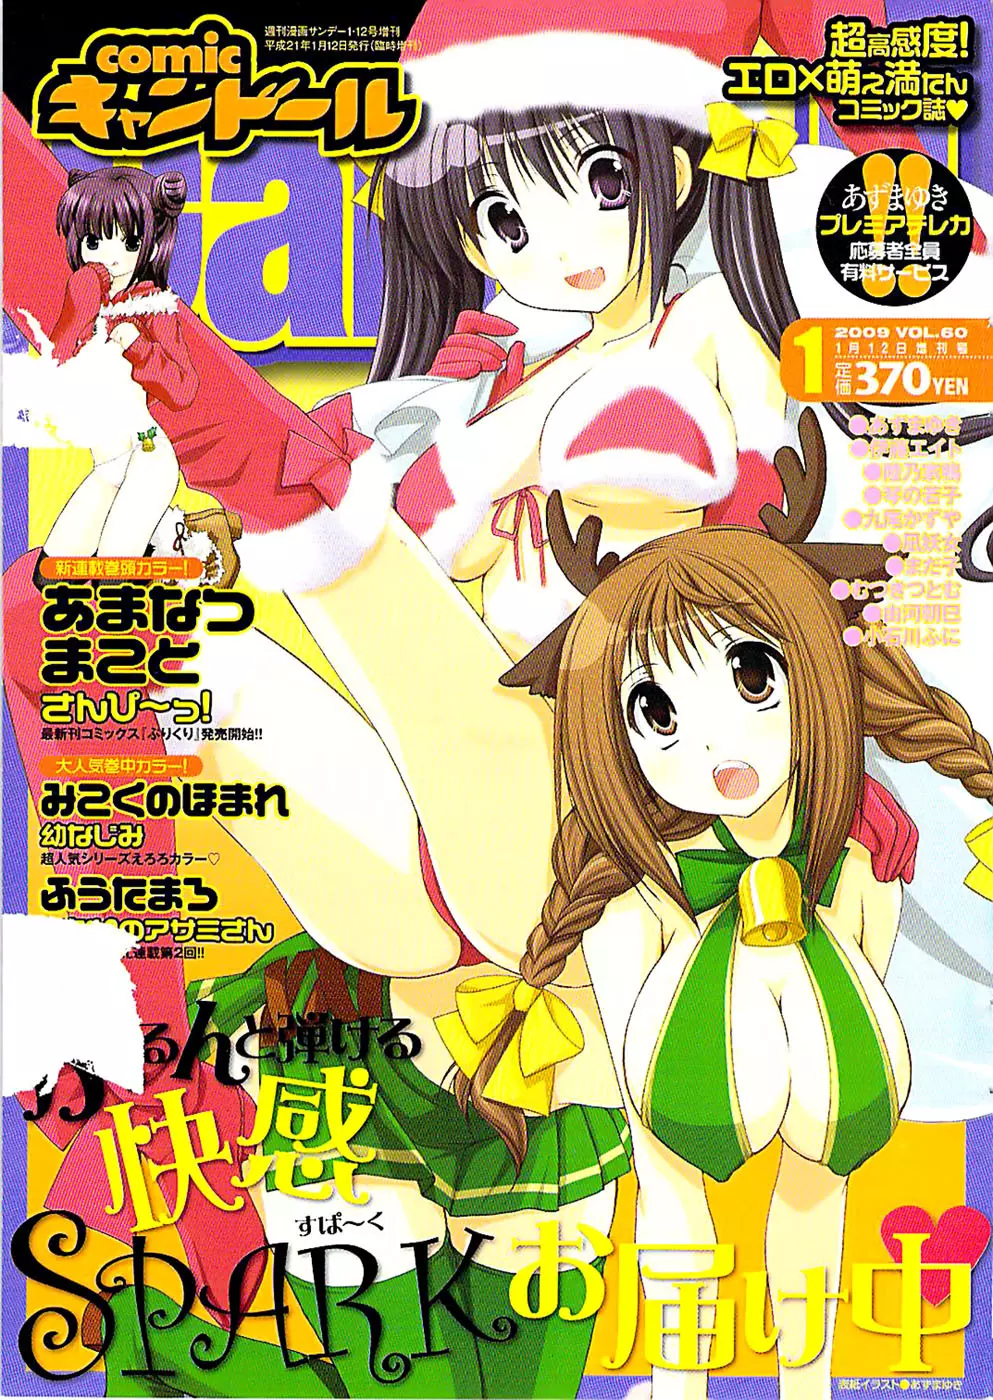 COMIC キャンドール 2009年1月号 Vol.60